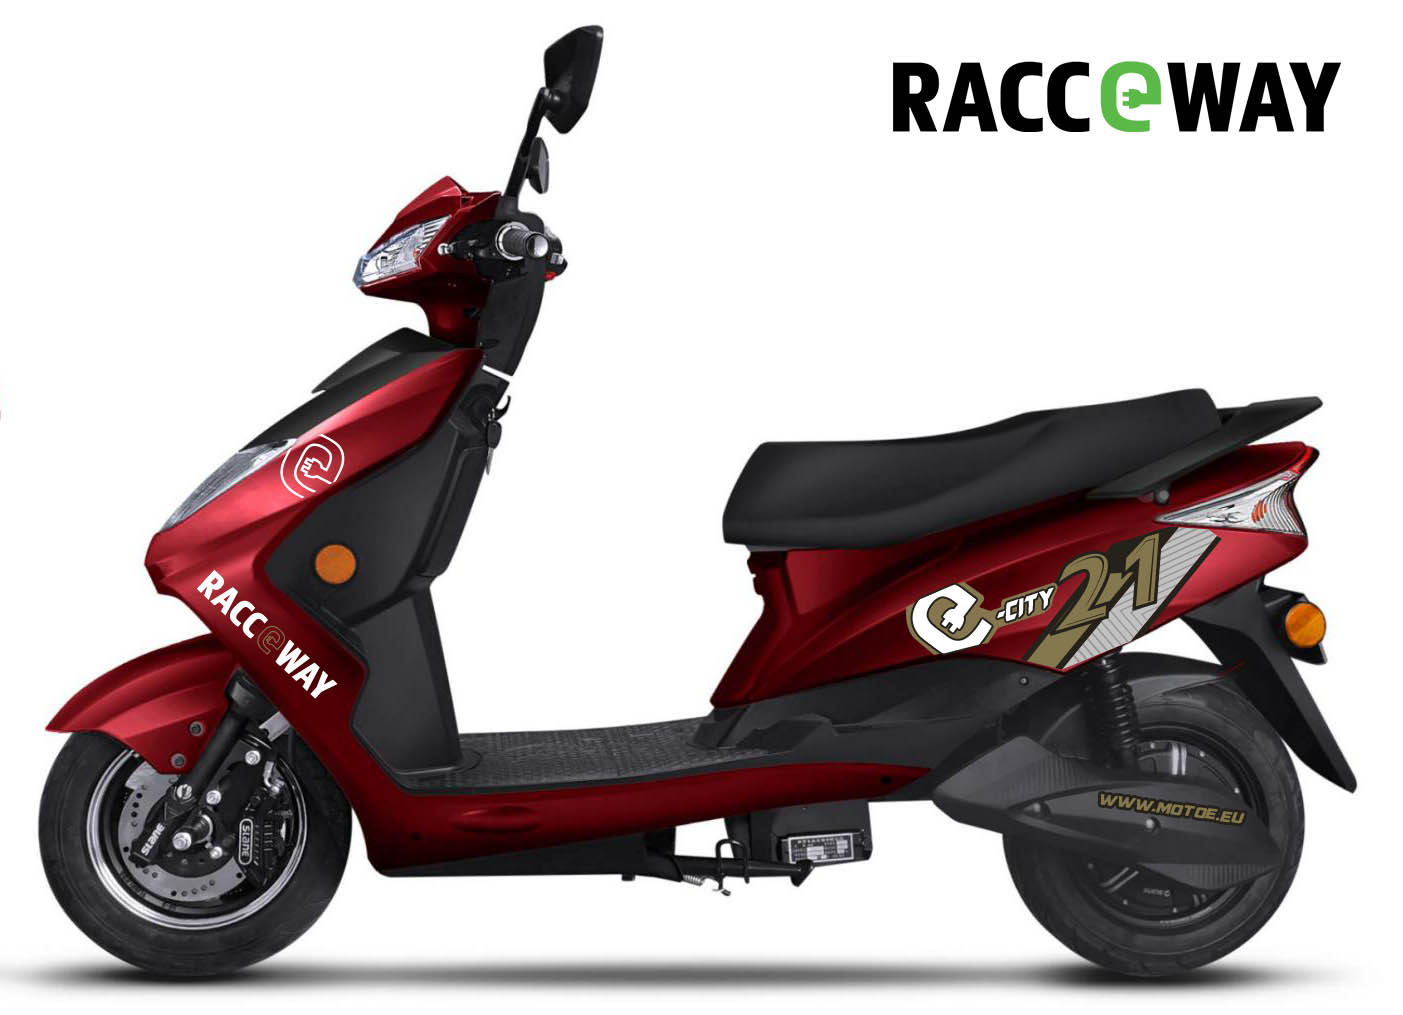 Elektrický motocykl RACCEWAY CITY 21 Barva: červená